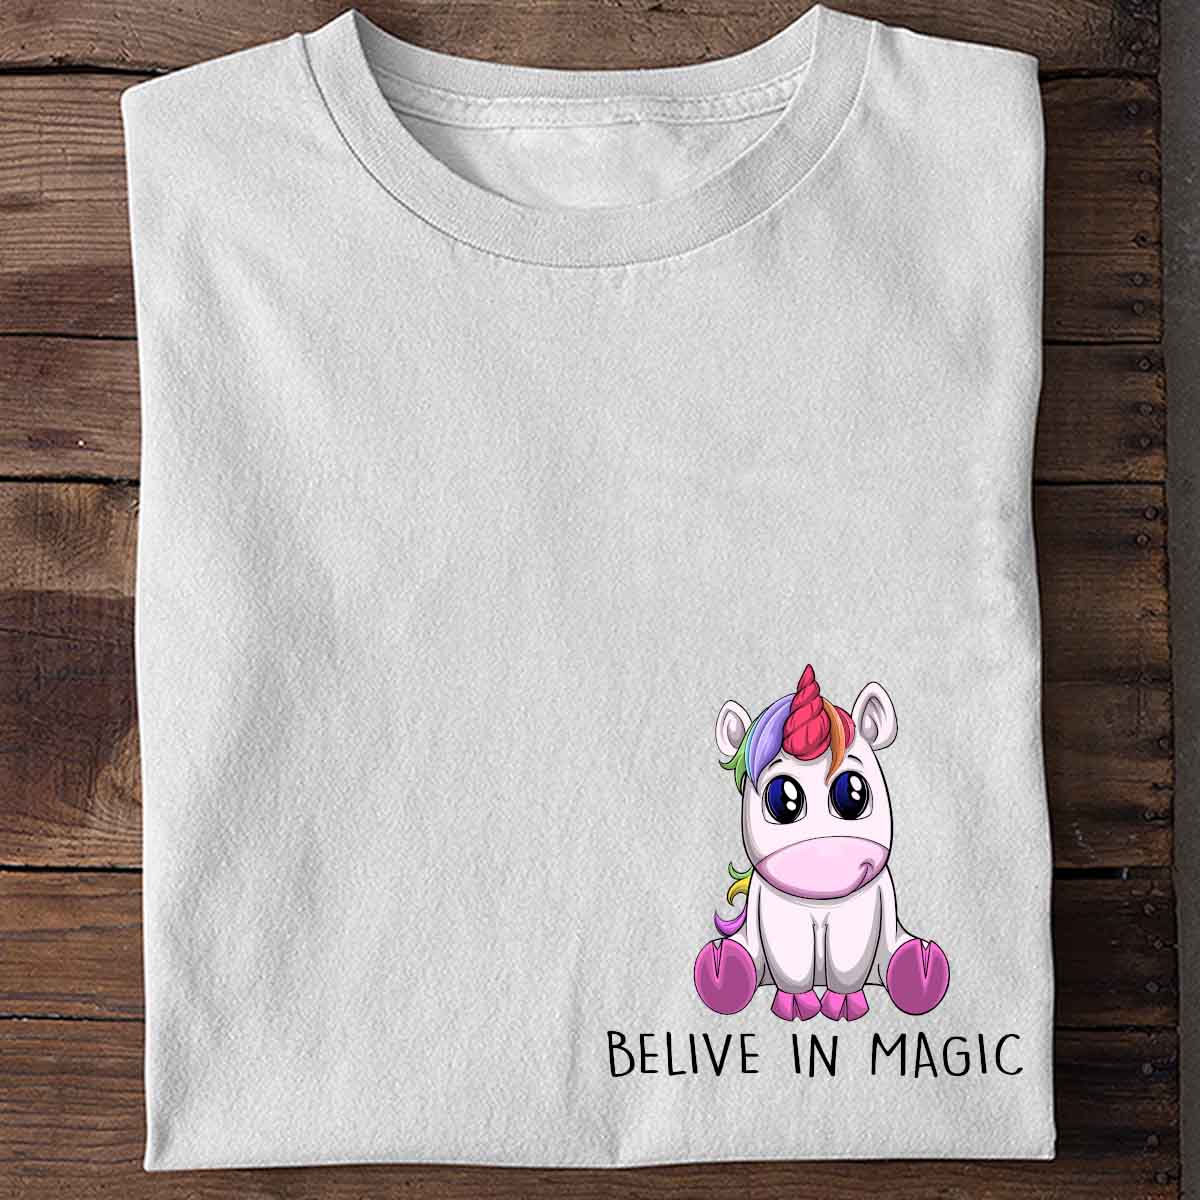 Belive Unicorn - Shirt Unisex Chest